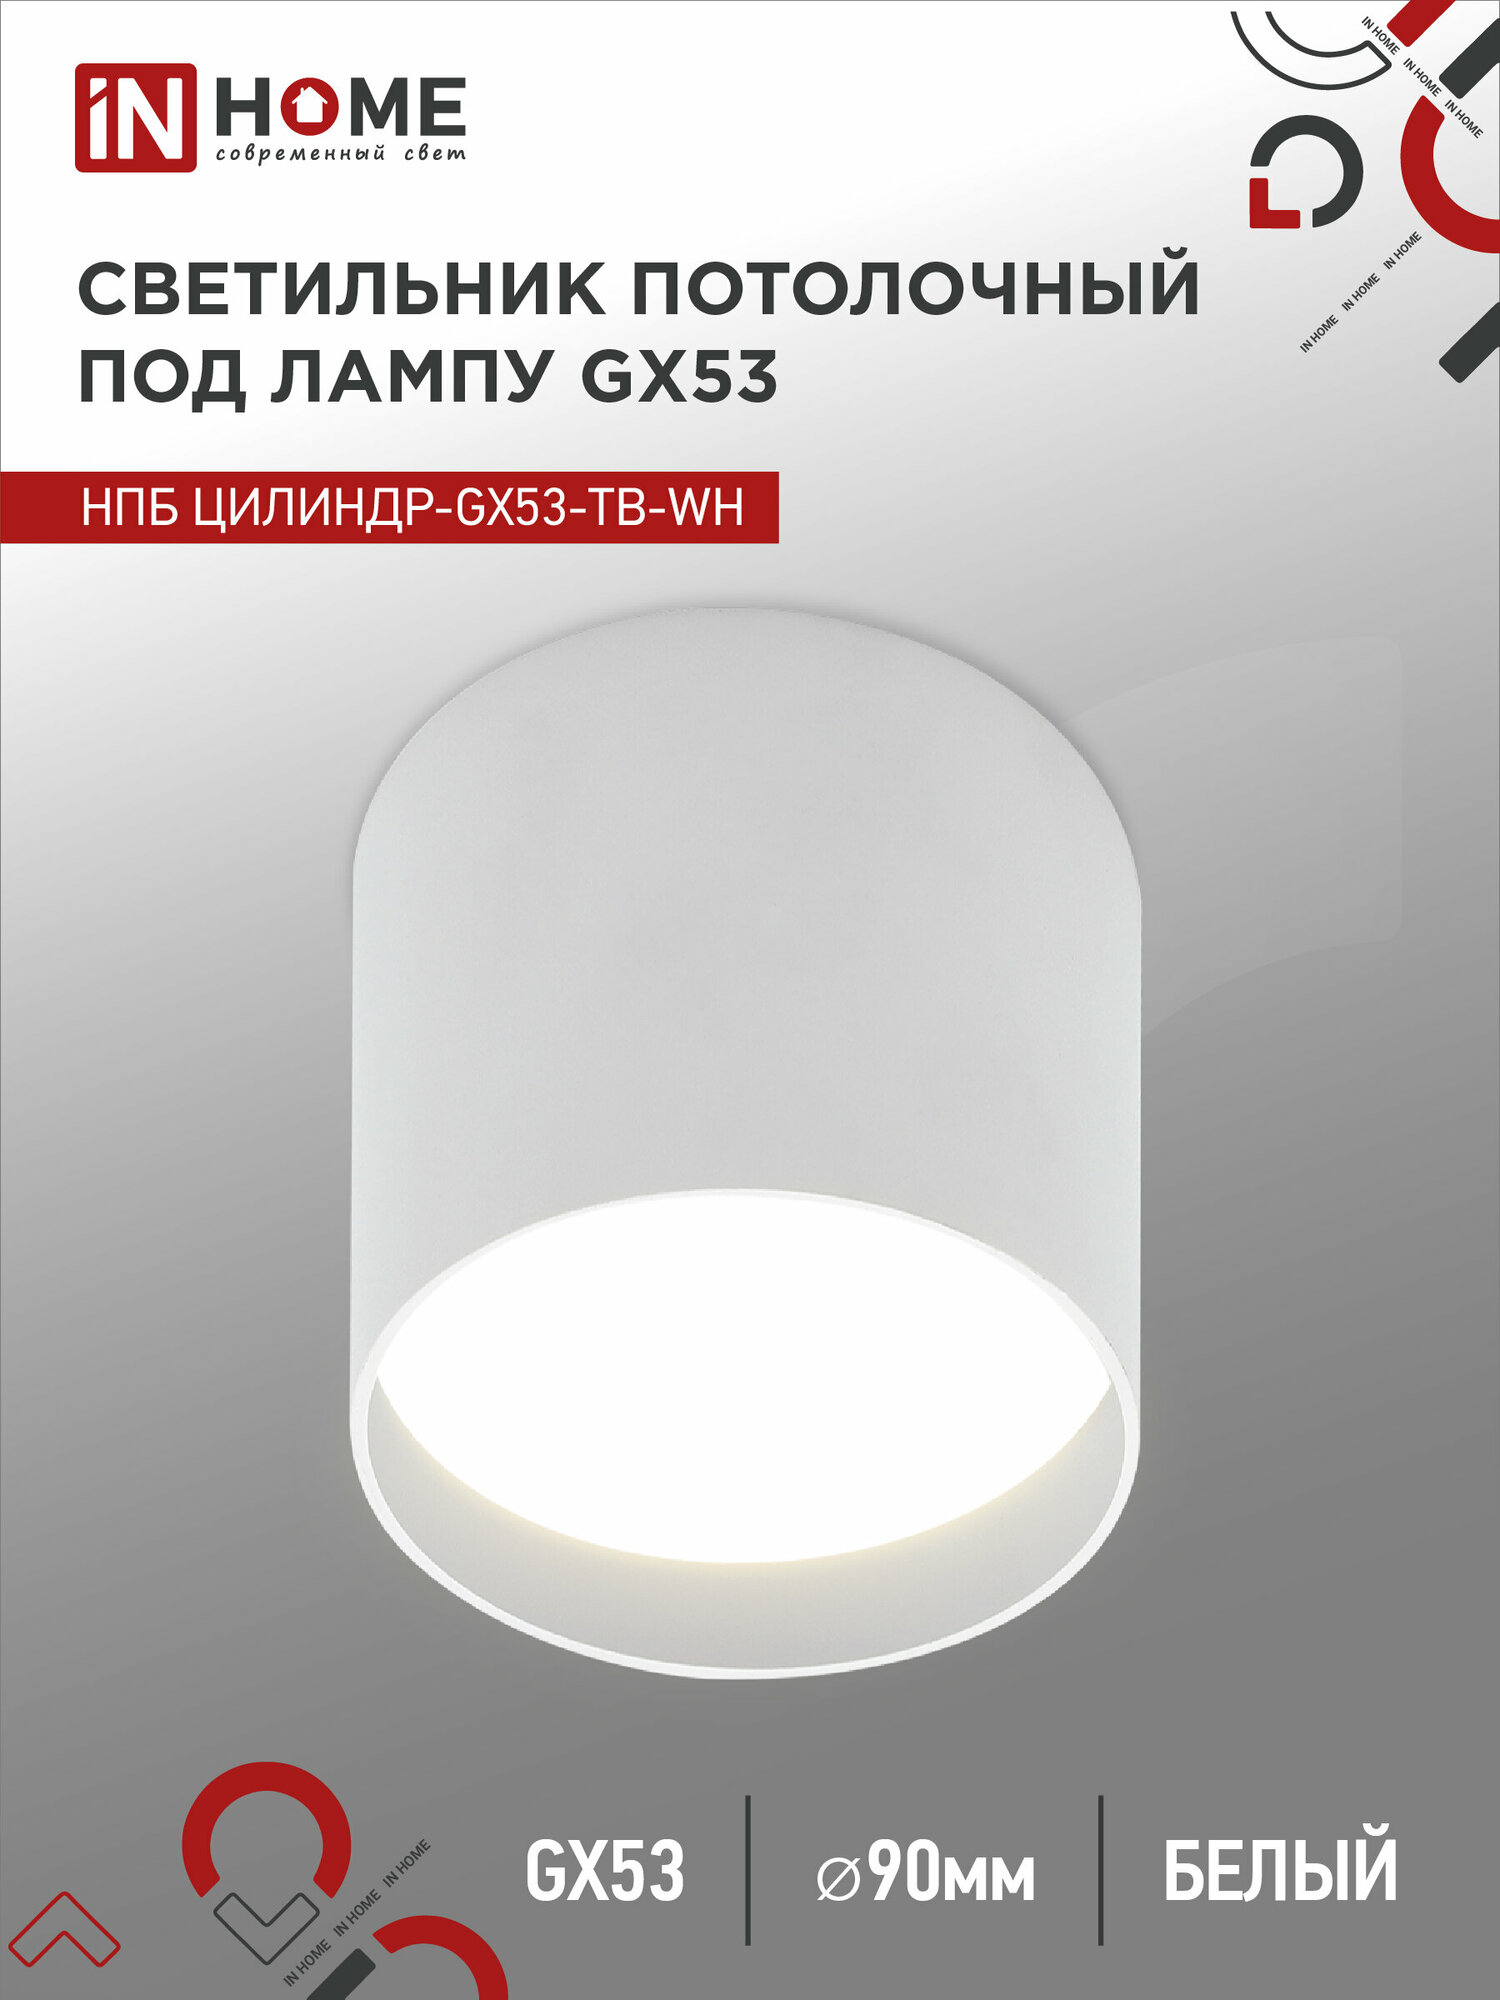 Потолочный светильник IN HOME нпб цилиндр-gx53-tb-wh под лампу gx53 90x90мм белый 4690612045481